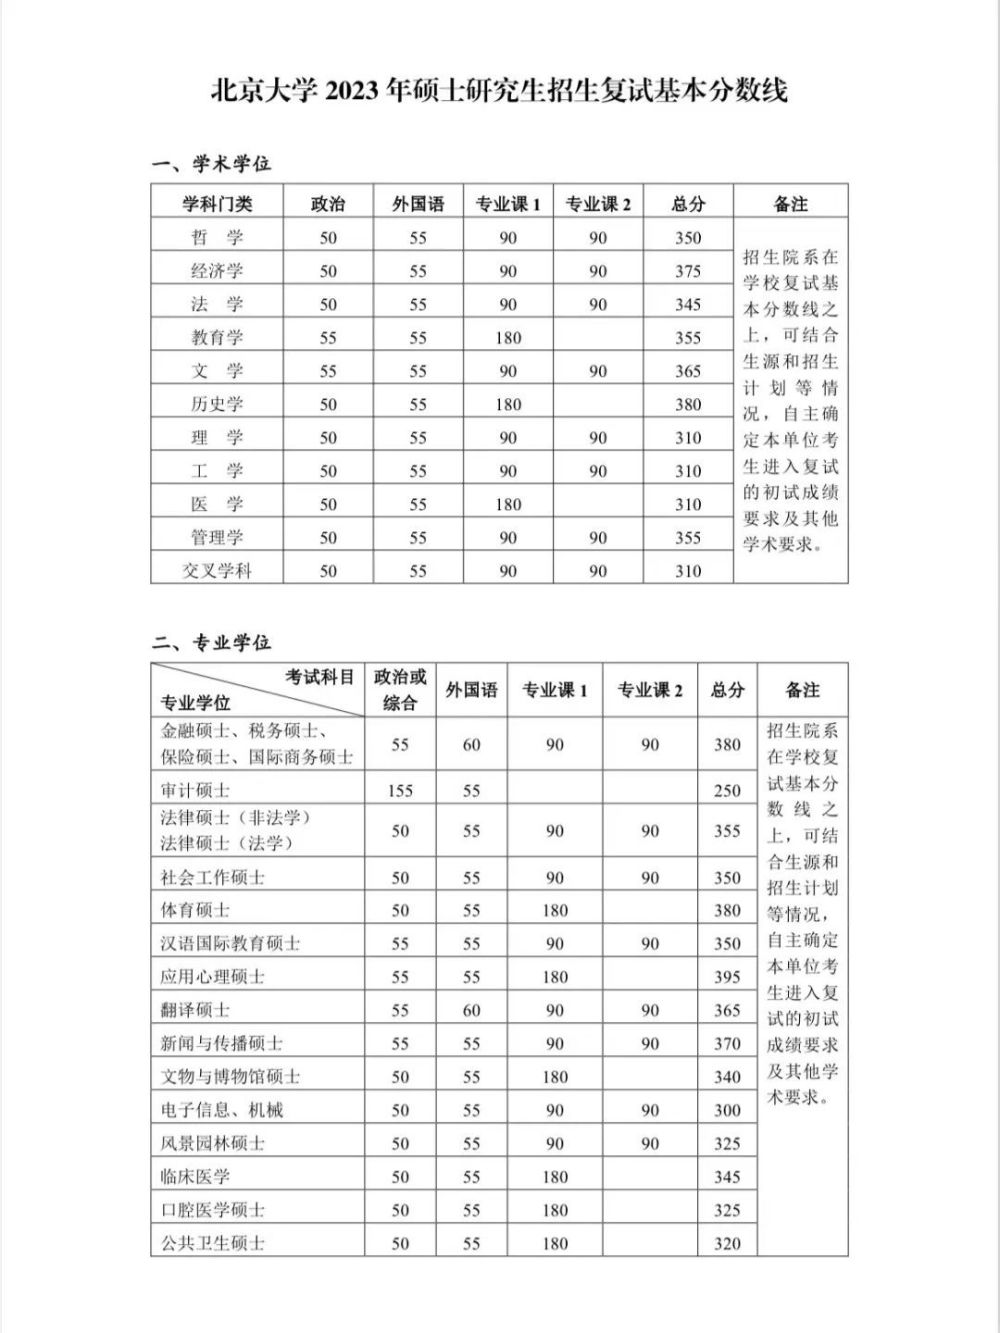 清华、北大、浙大、川大等发布2023研考复试线，清华最高下降44分